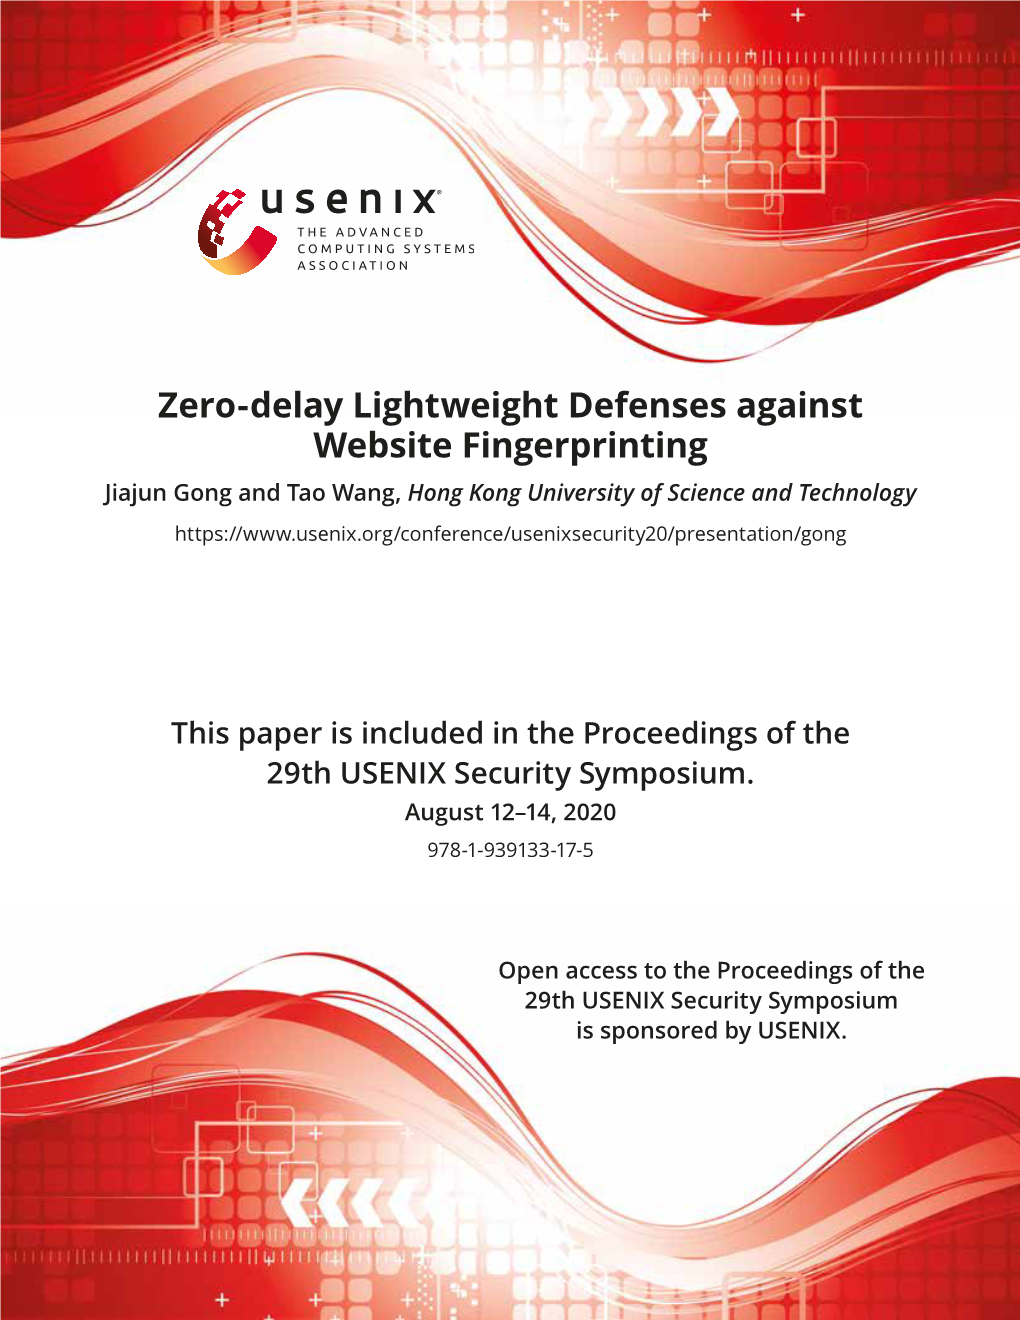 Zero-Delay Lightweight Defenses Against Website Fingerprinting